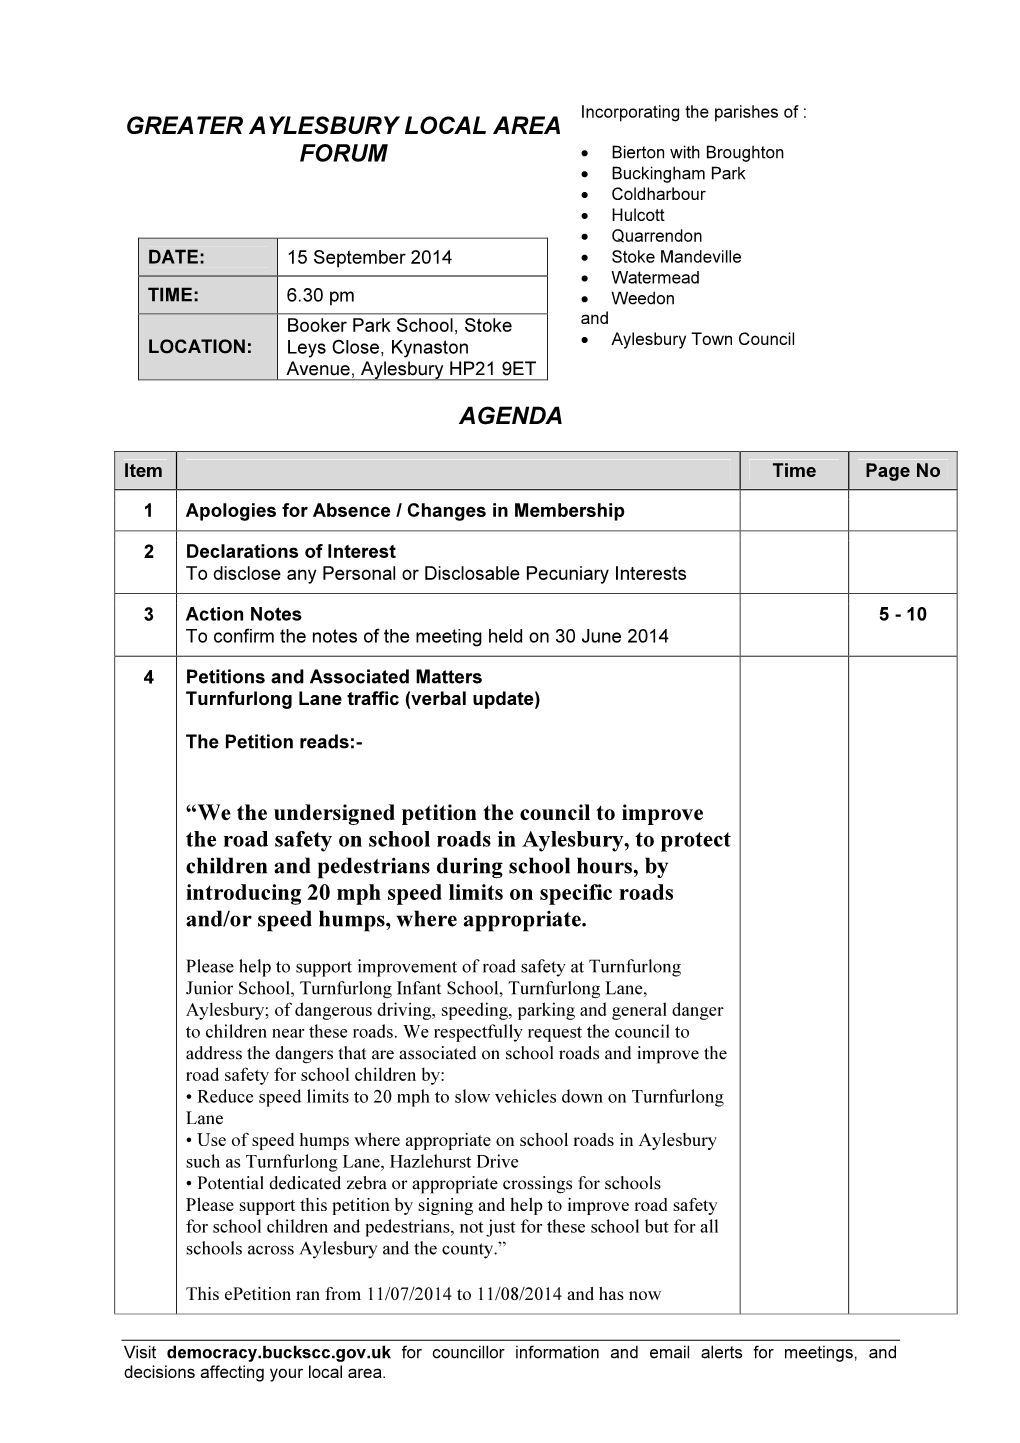 Agenda Frontsheet 15/09/2014, 18.30